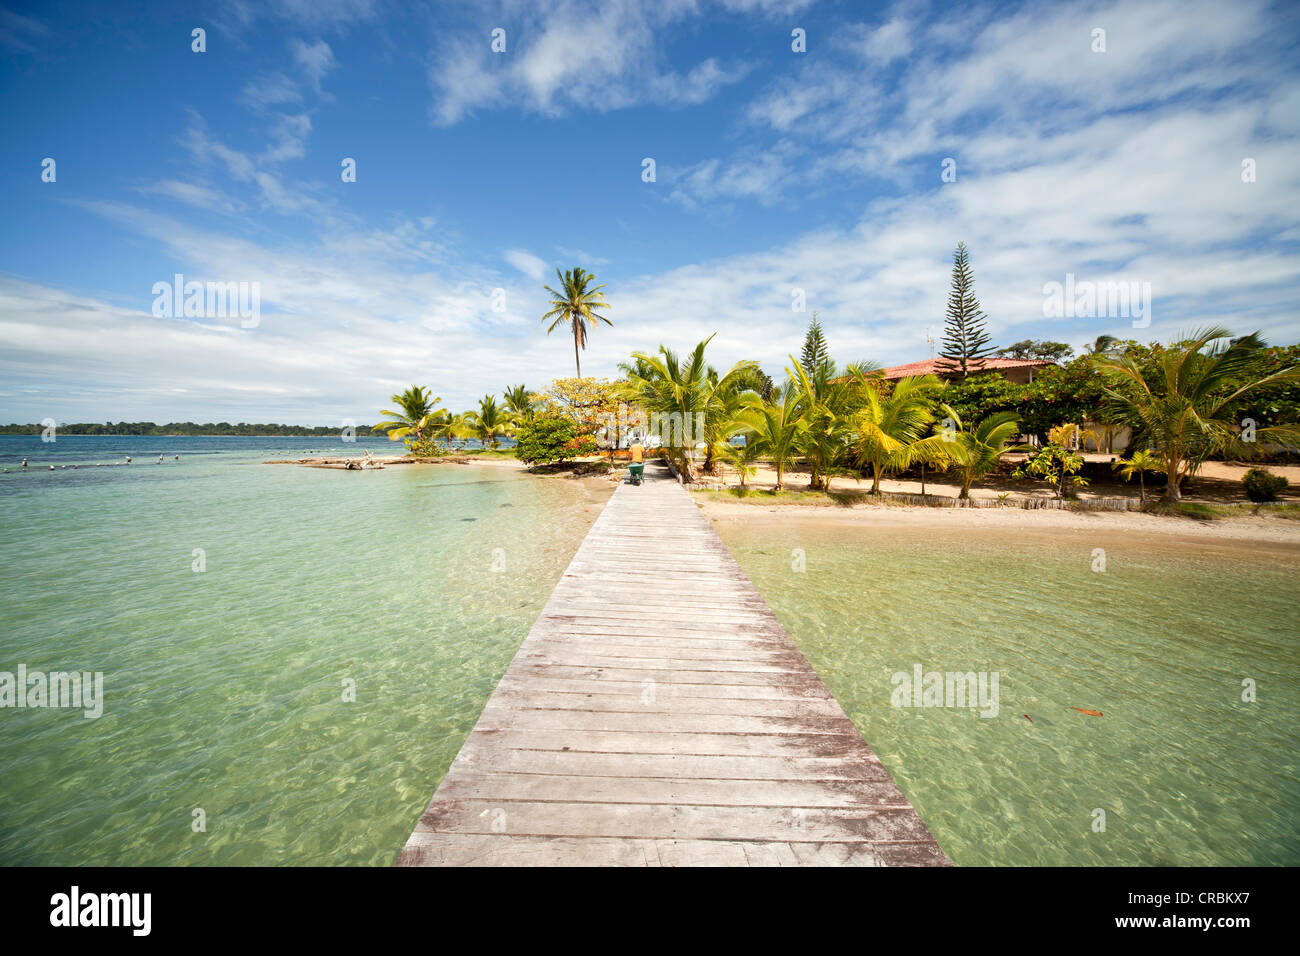 Jetty and the beach of Boca del Drago on the island of Colon, Bocas del Toro, Panama, Central America Stock Photo